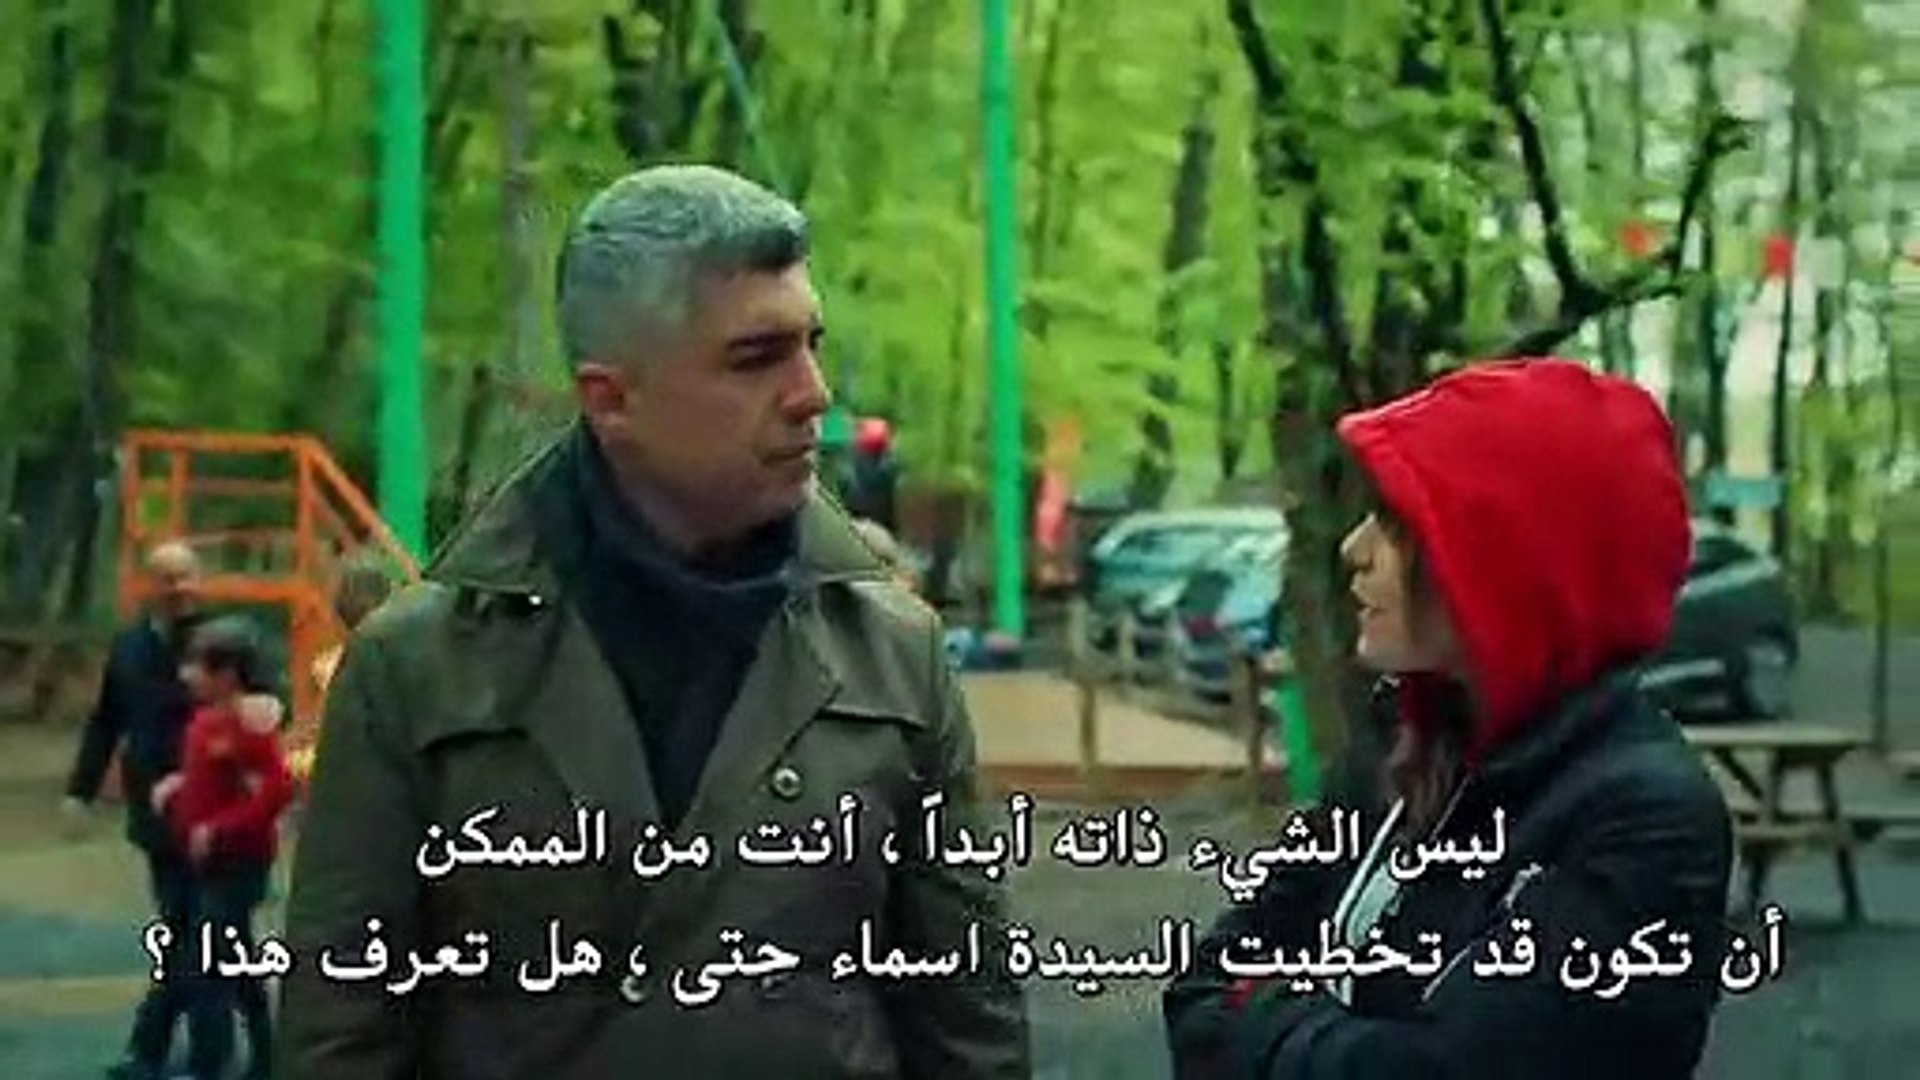 مسلسل عروس اسطنبول 2 الموسم الثاني مترجم للعربية - الحلقة 31 القسم 3 -  video Dailymotion